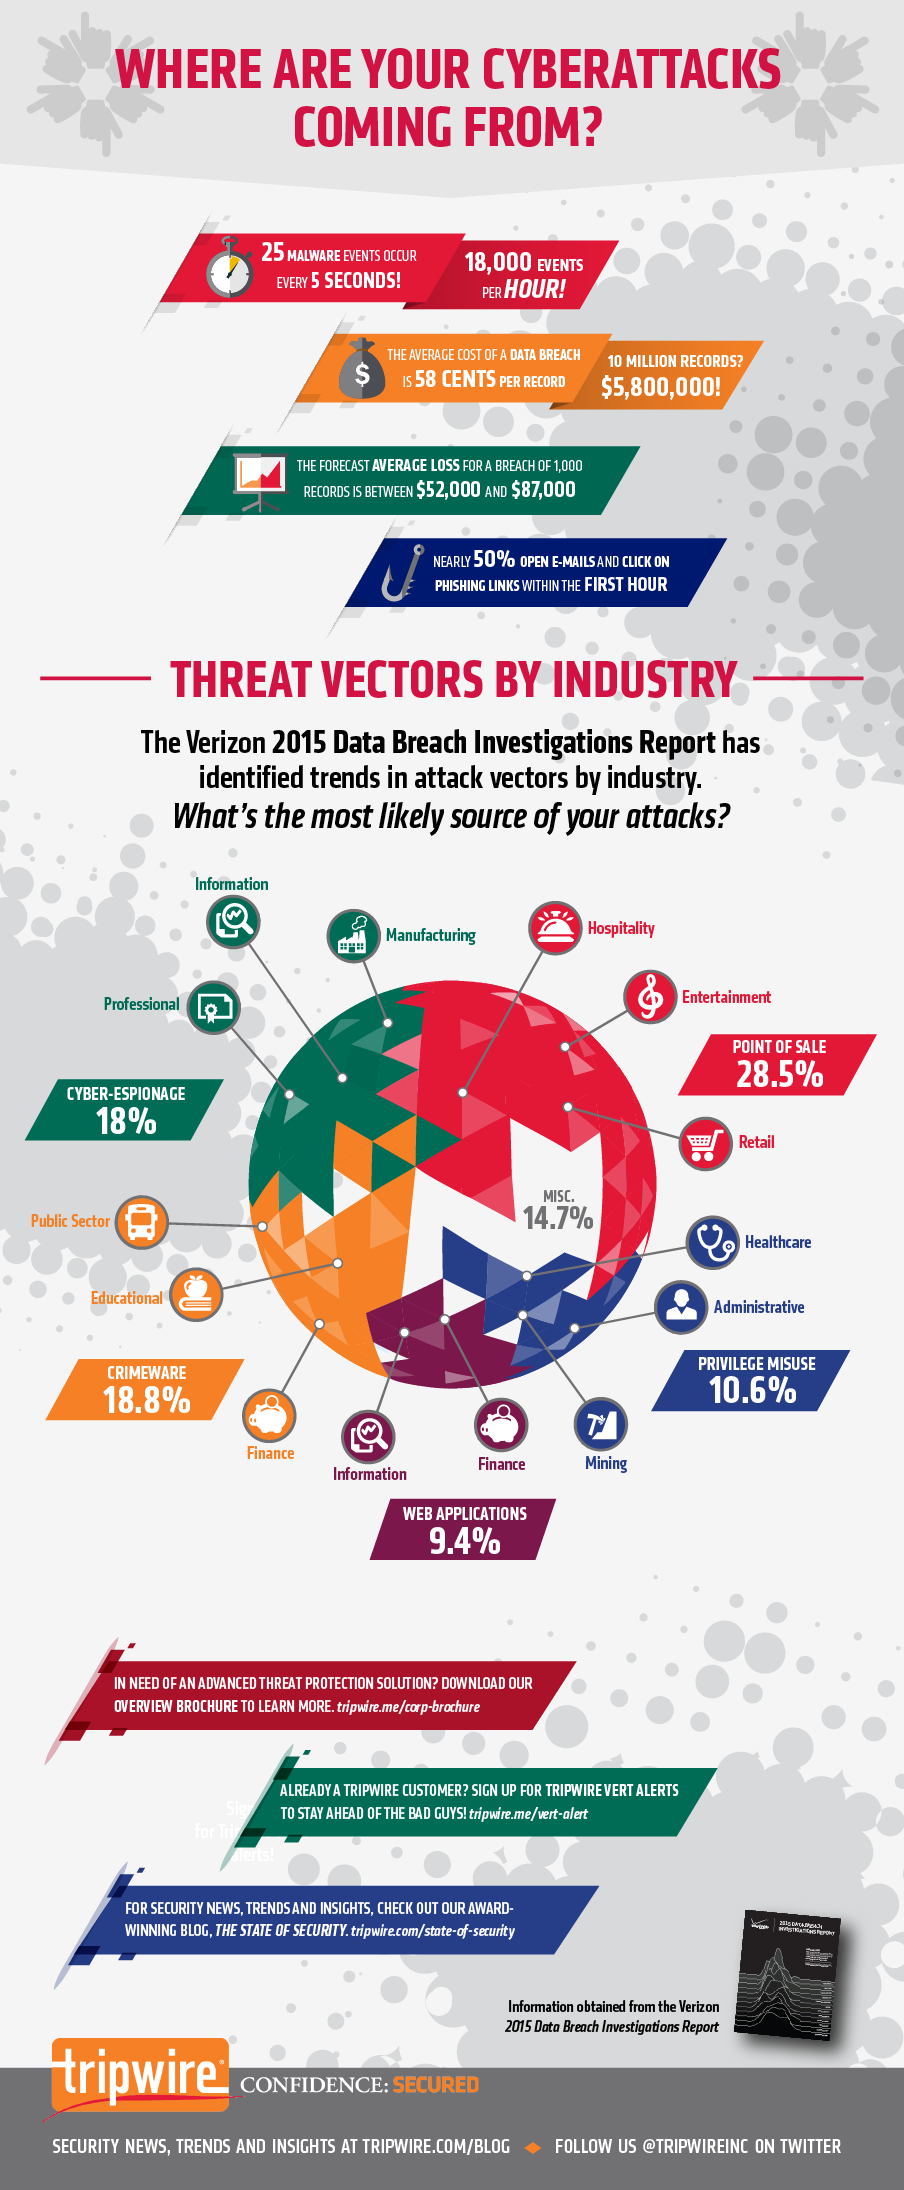 Tripwire_2015_Verizon_Attack_Vectors_infographic